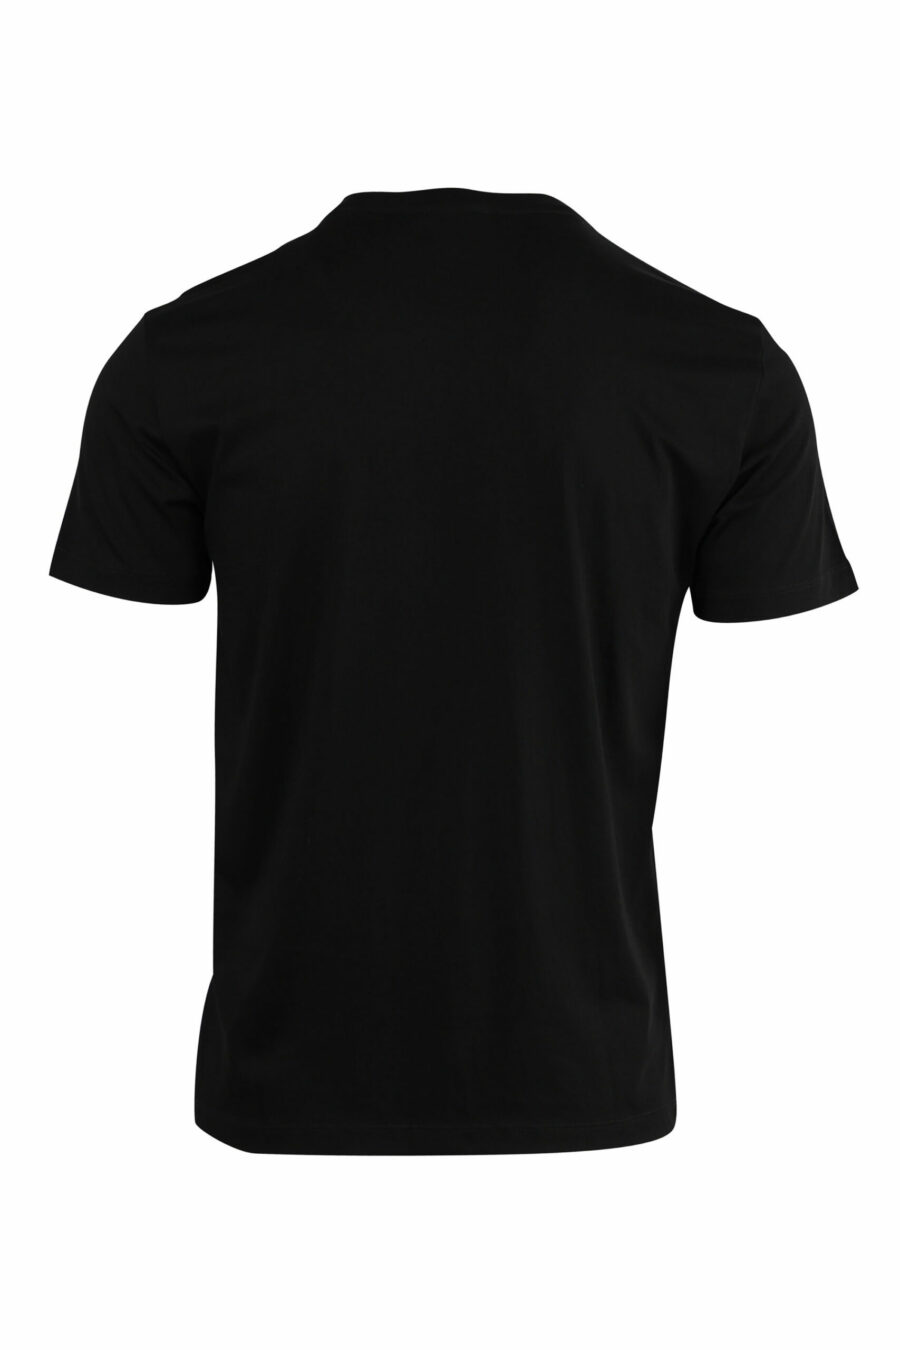 Camiseta negra con minilogo etiqueta "lux identity" dorado - 8057767515805 2 scaled